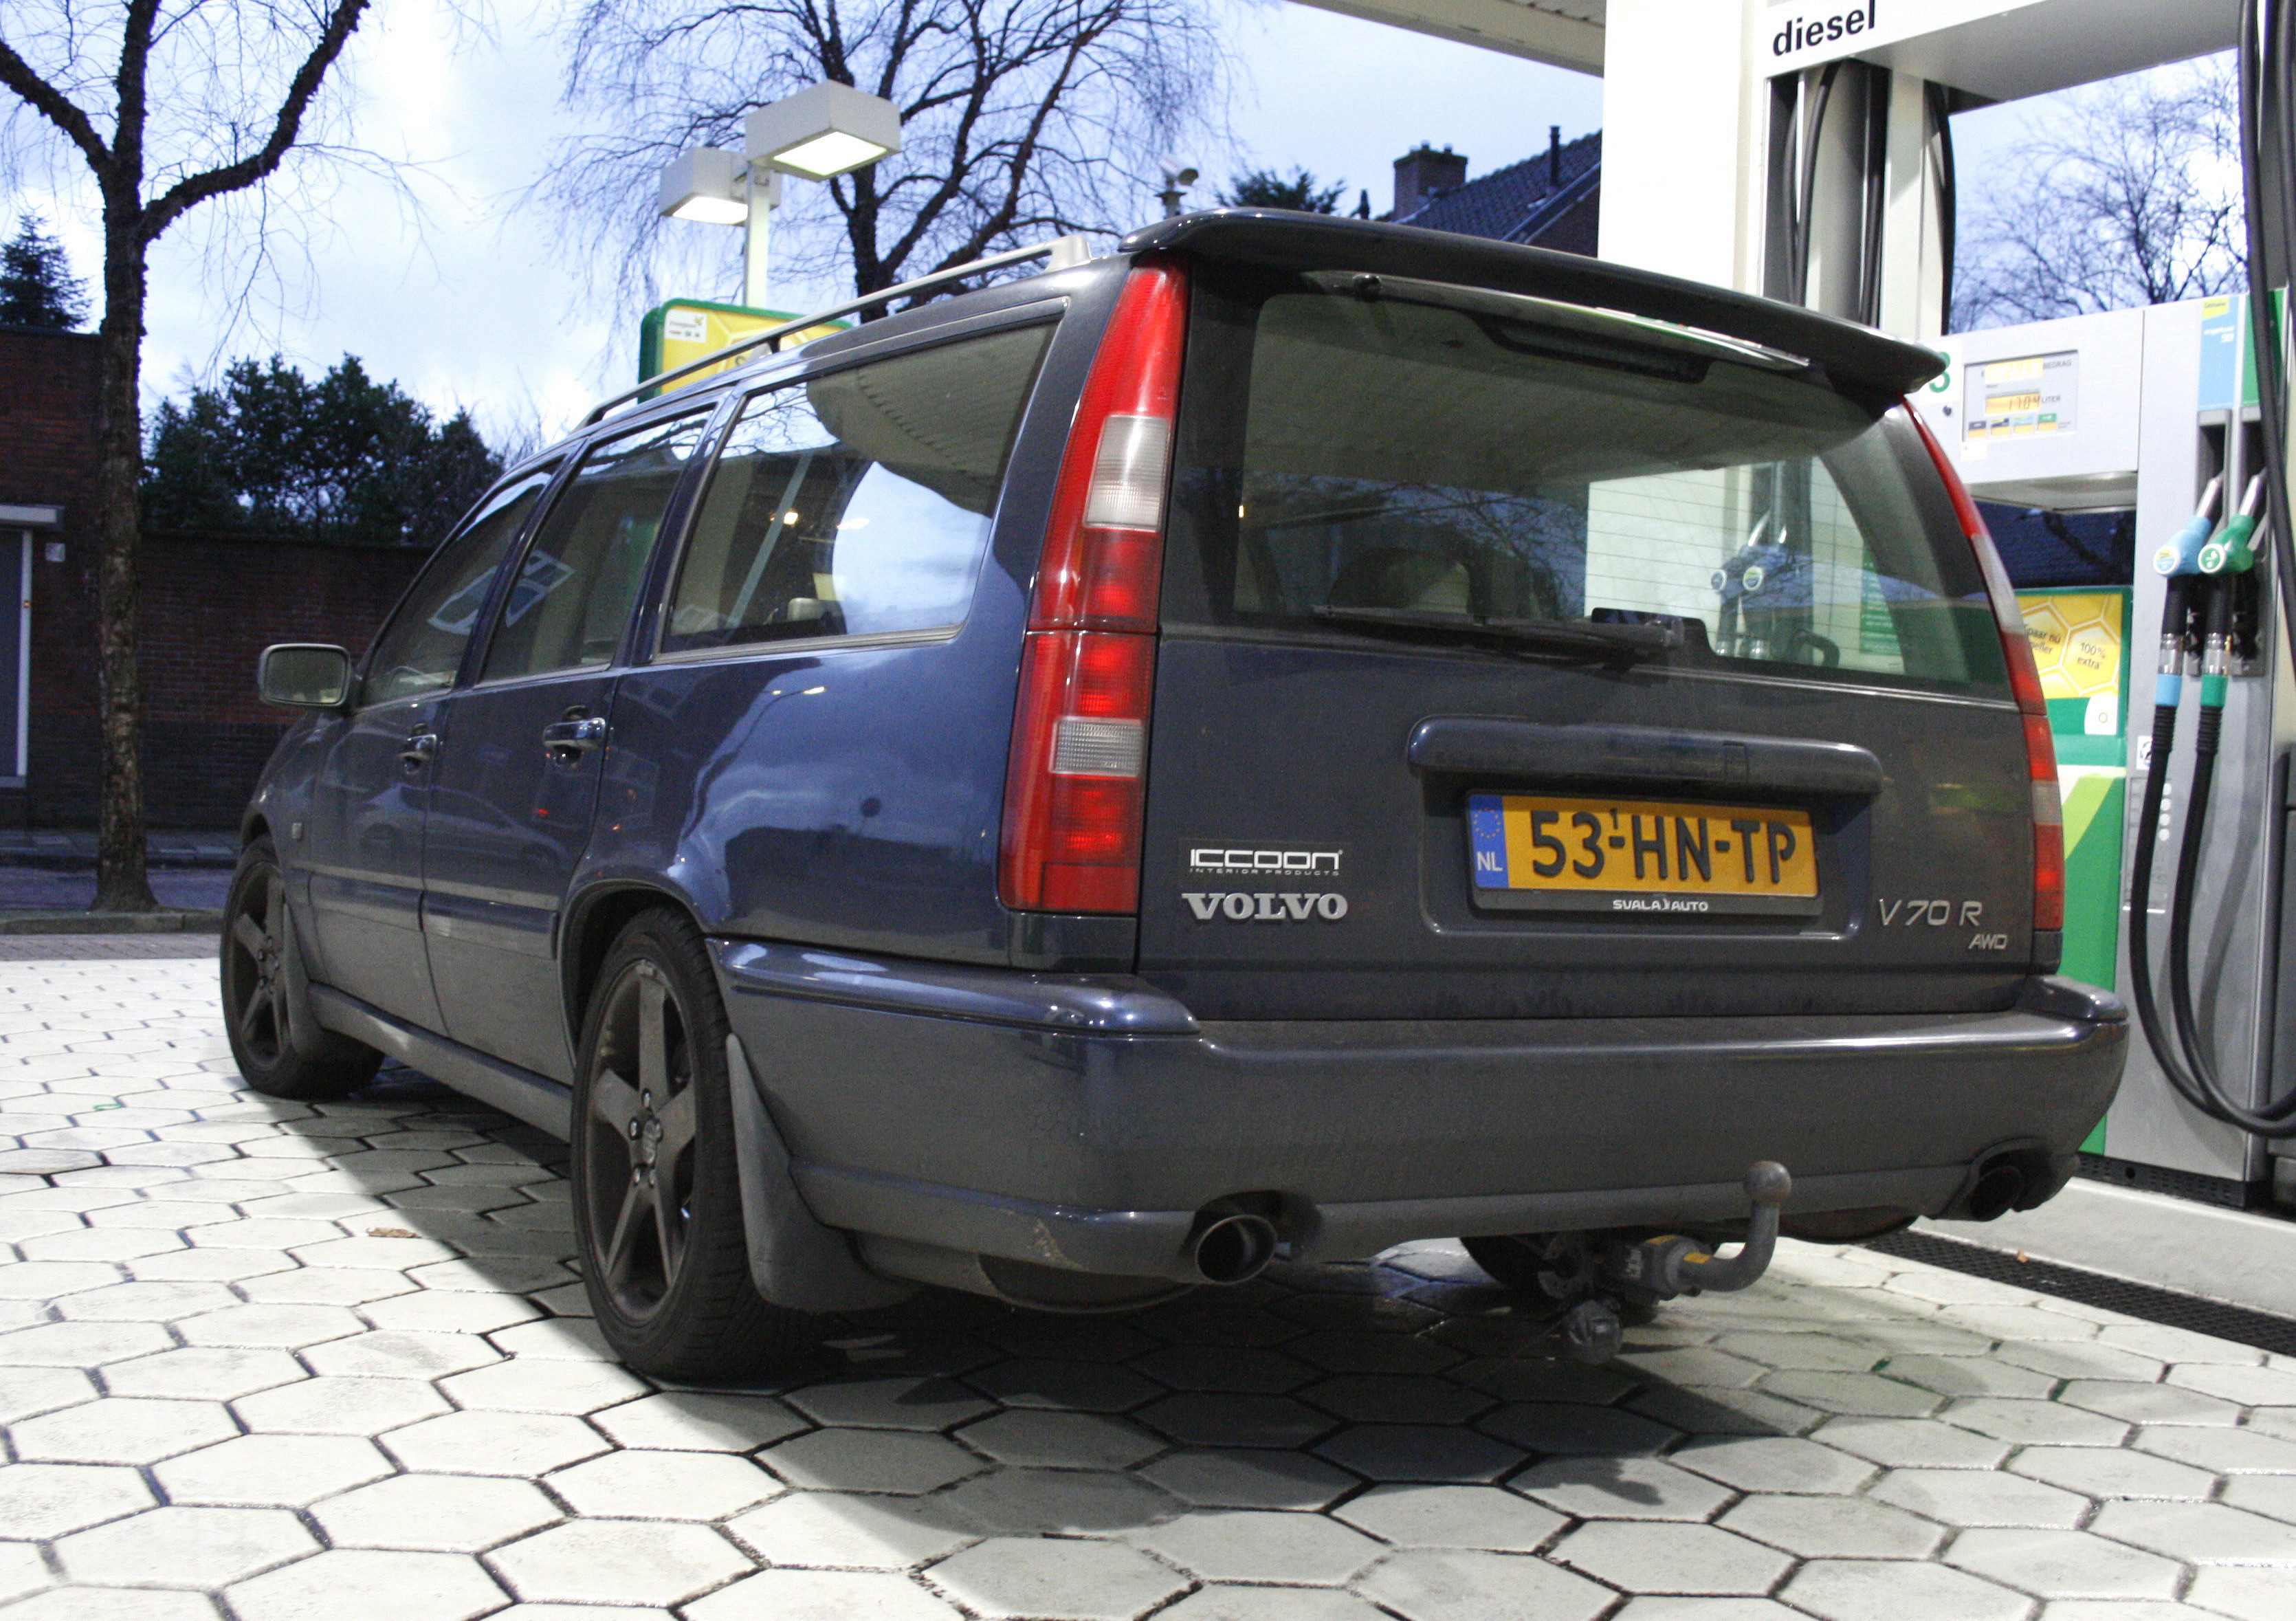 Volvo V70 R AWD Automatique / Flickr - Partage de photos!